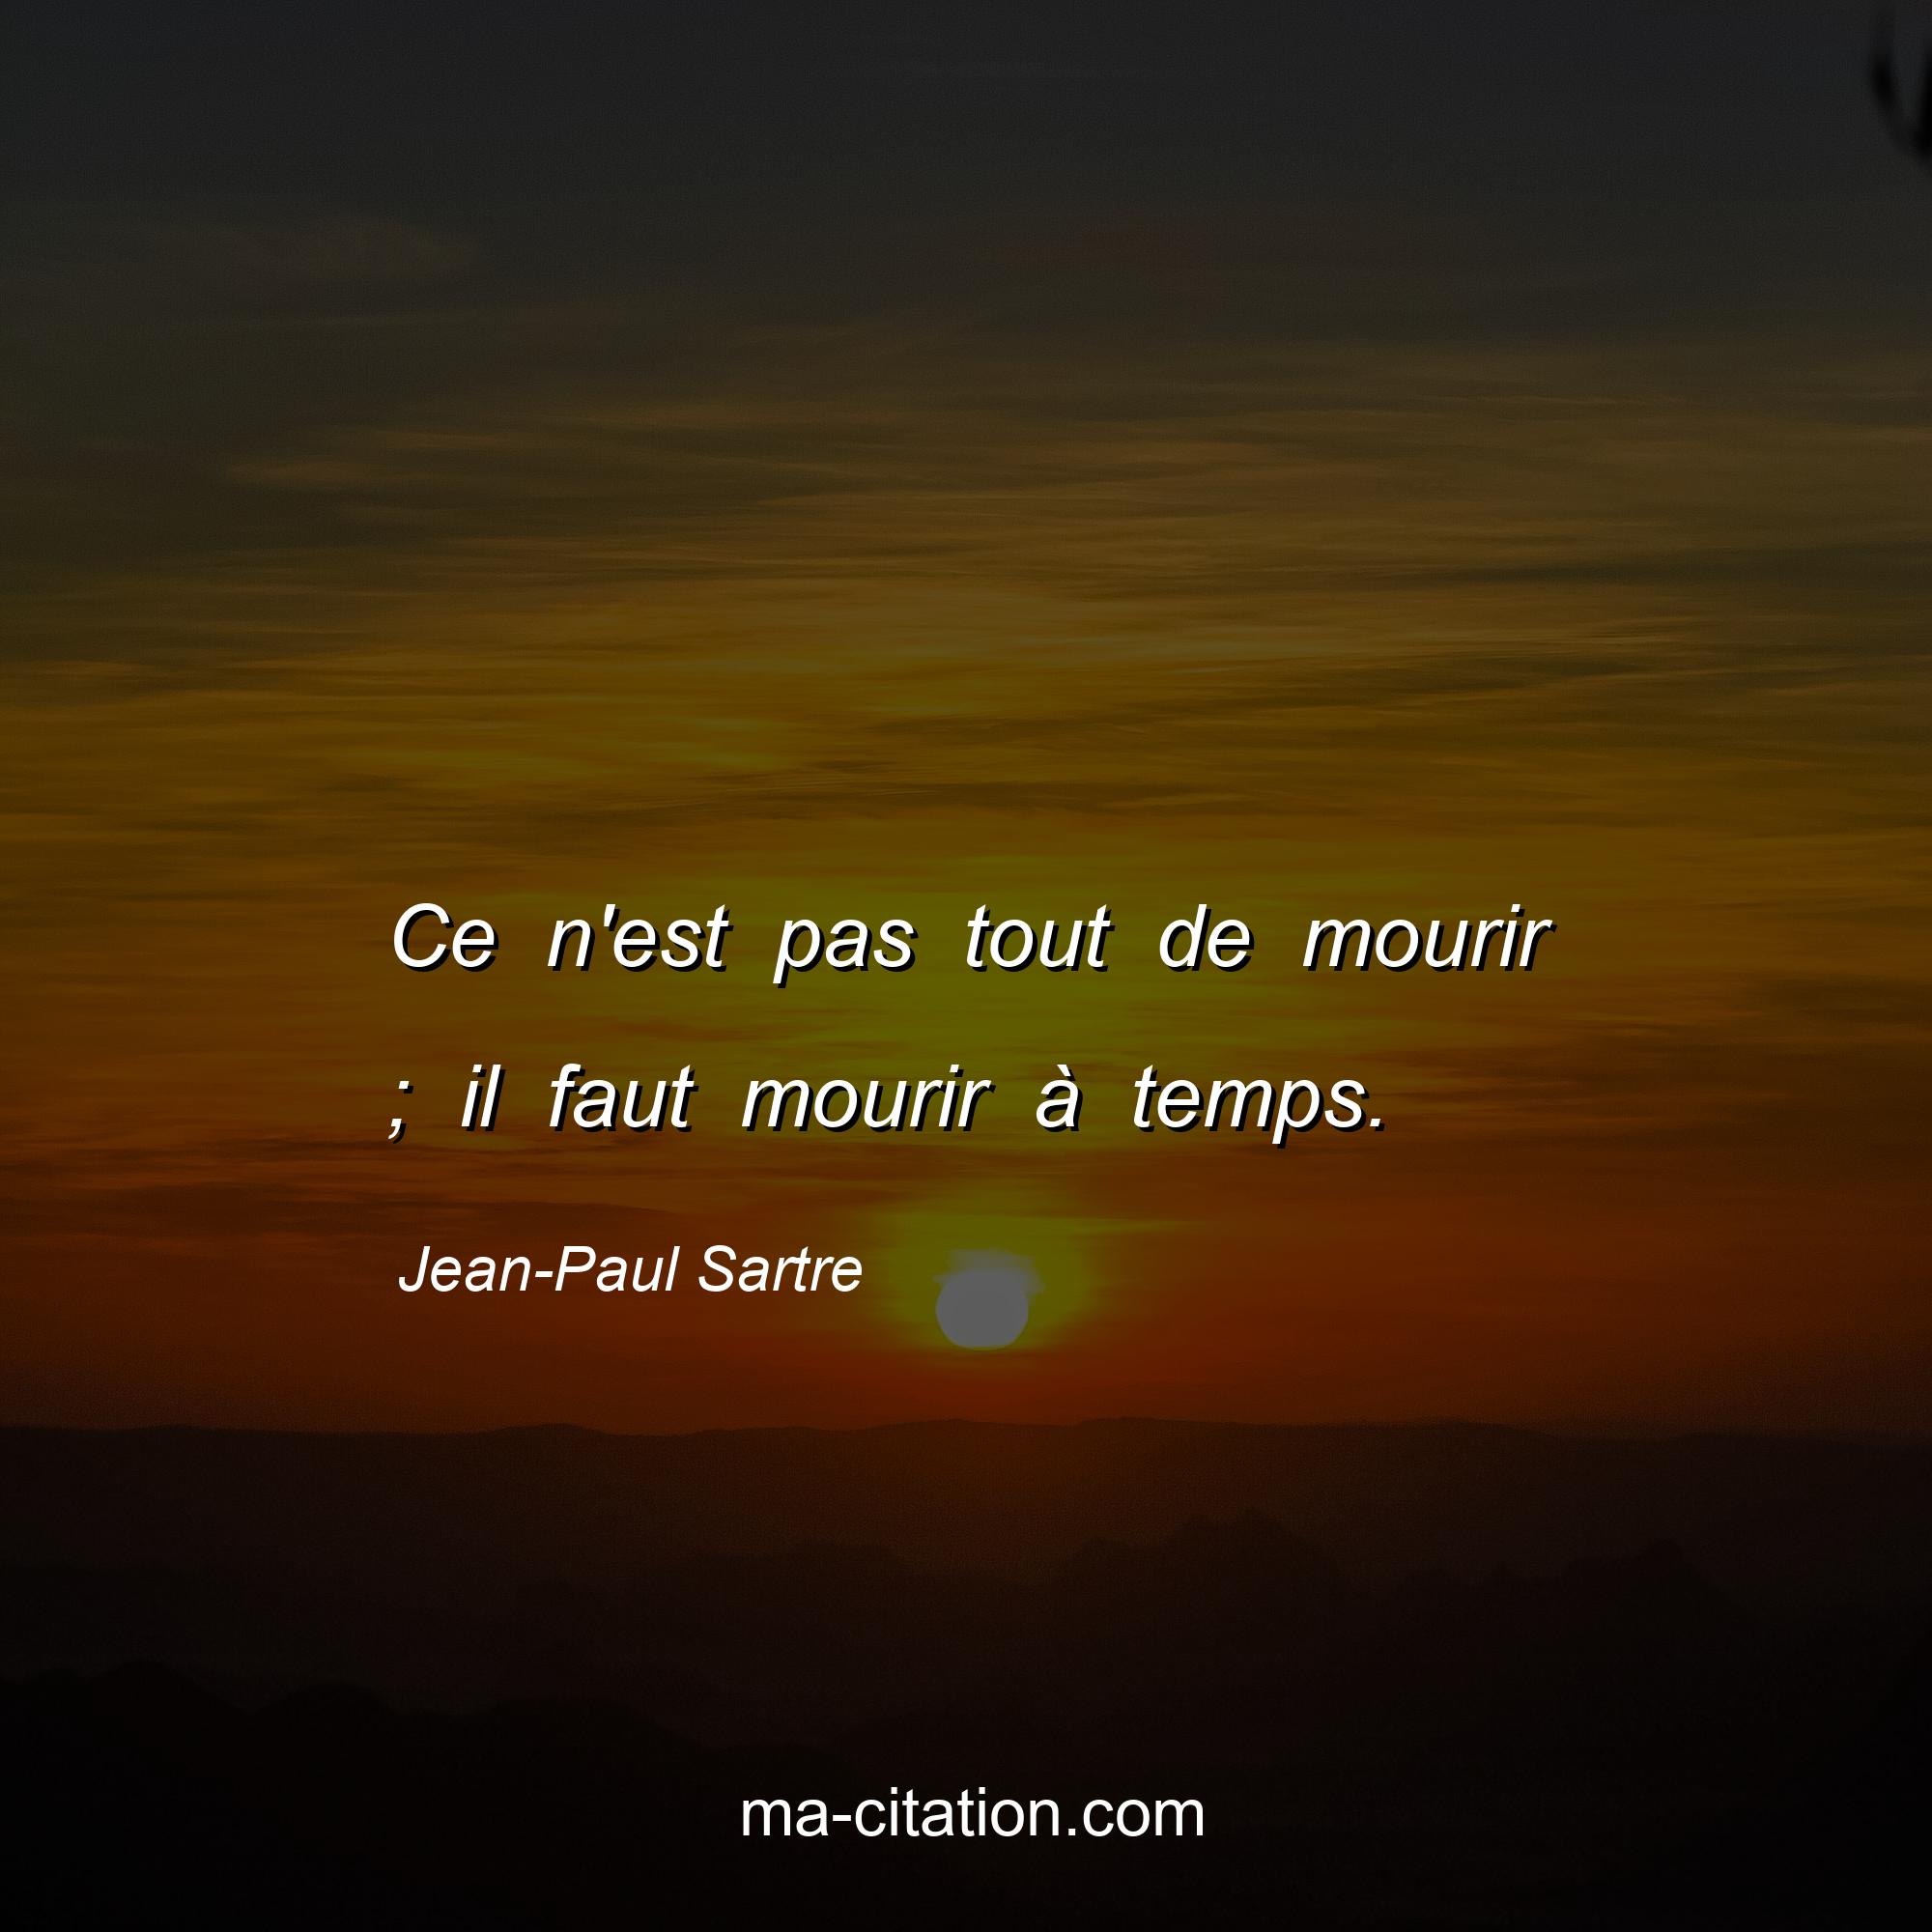 Jean-Paul Sartre : Ce n'est pas tout de mourir ; il faut mourir à temps.